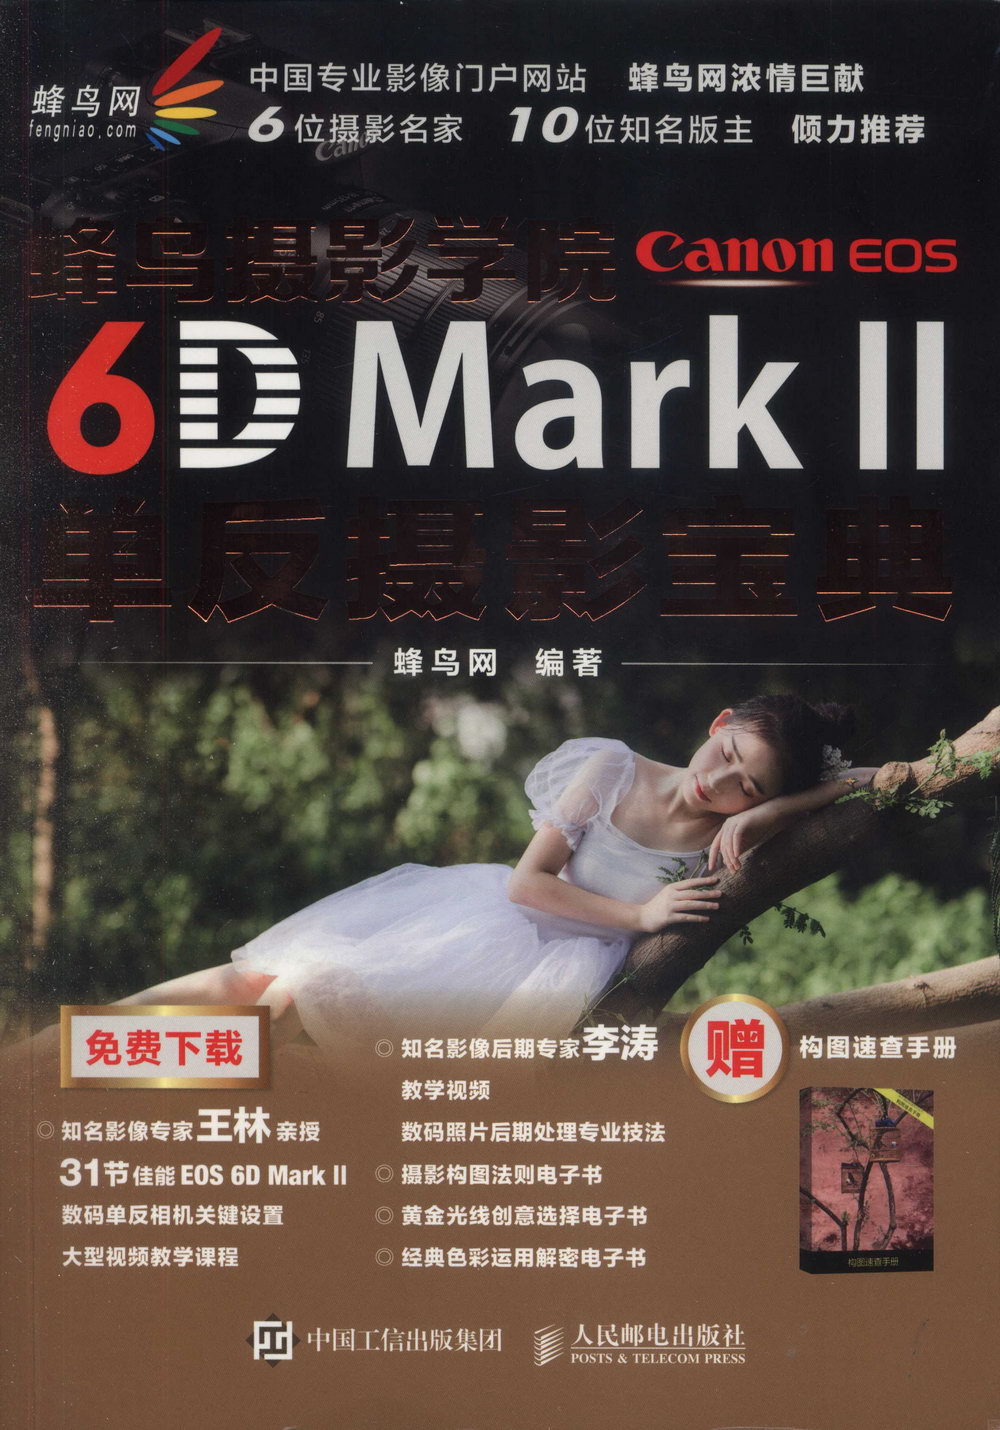 蜂鳥攝影學院Canon EOS 6D Mark II單反攝影寶典